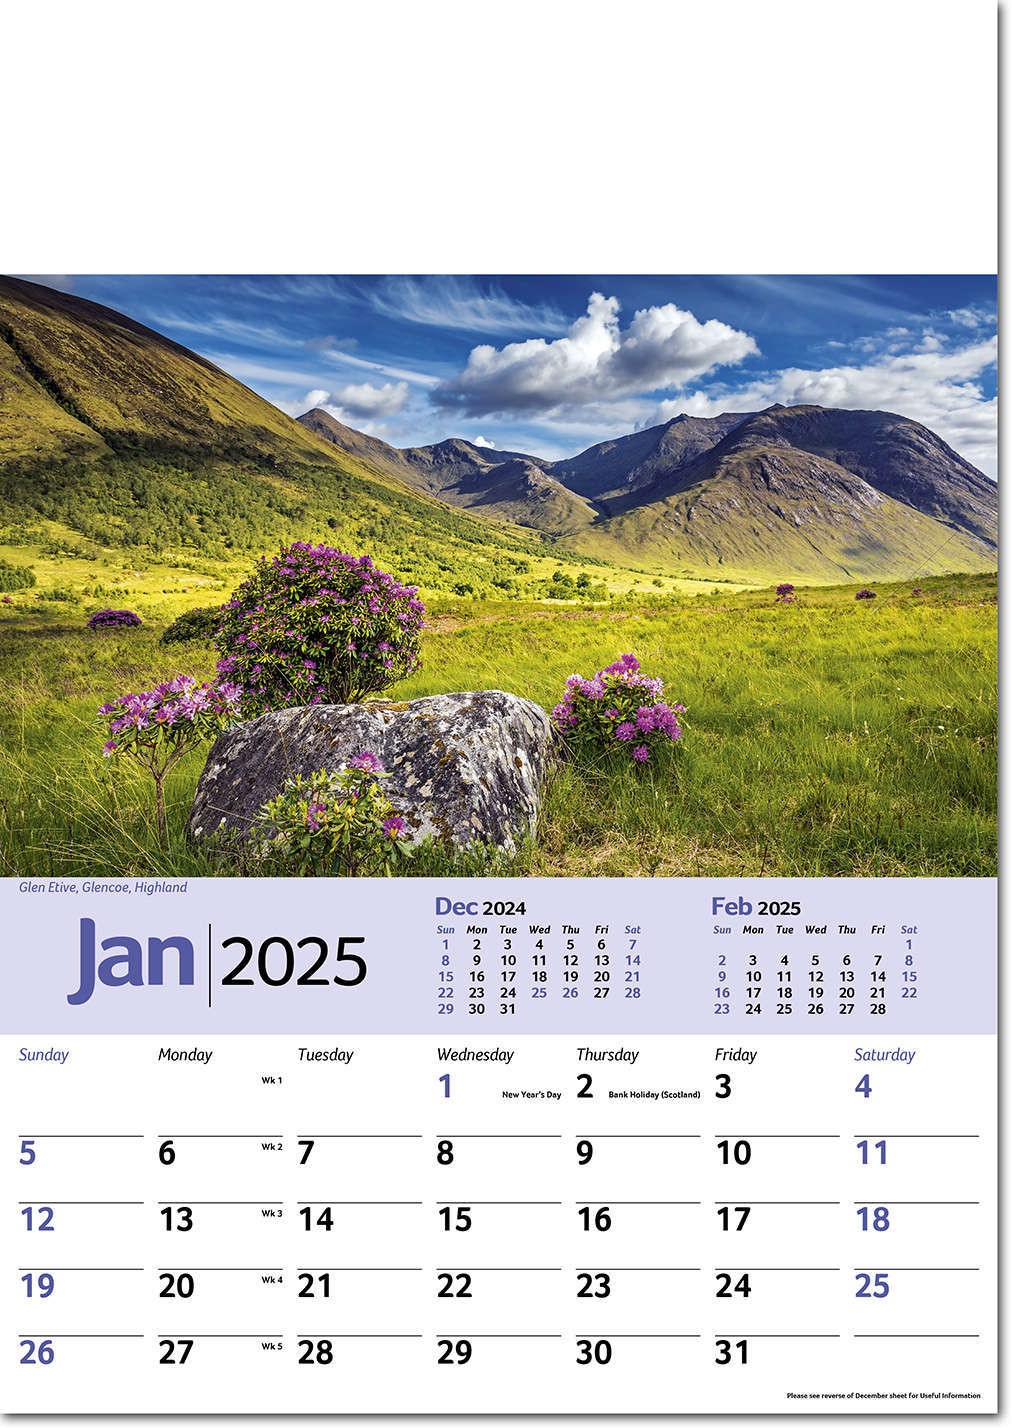 Pride of Scotland Calendar